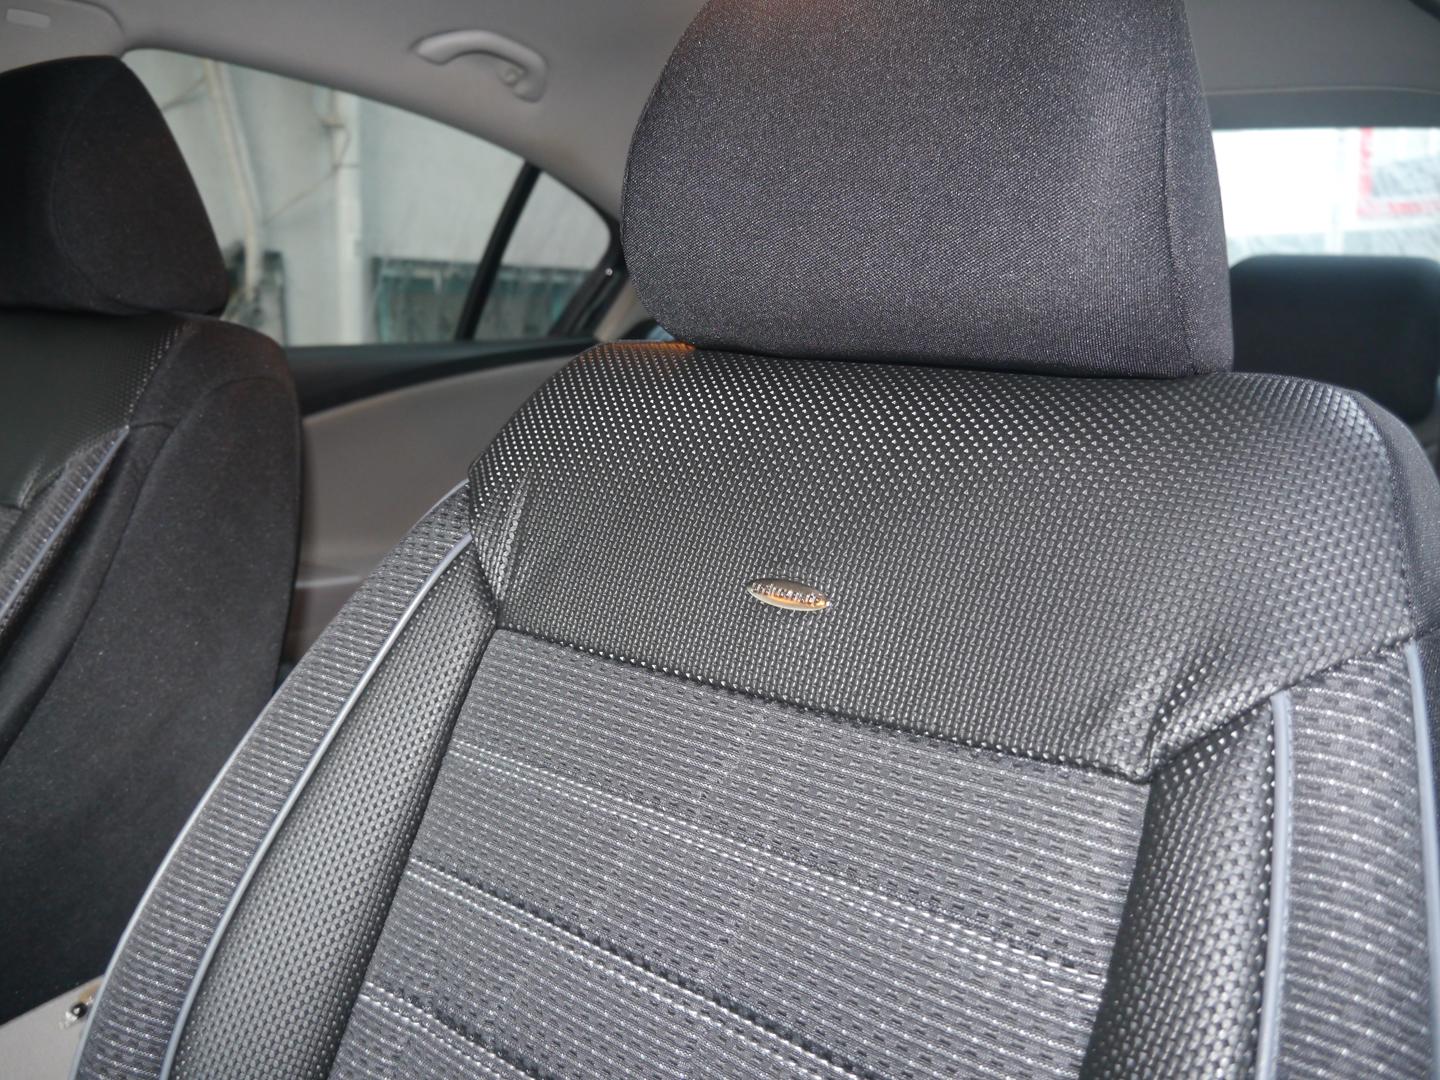 Autositzbezüge Maß Schonbezüge Sitzschoner Sitzbezug für Opel Corsa E  (14-19)